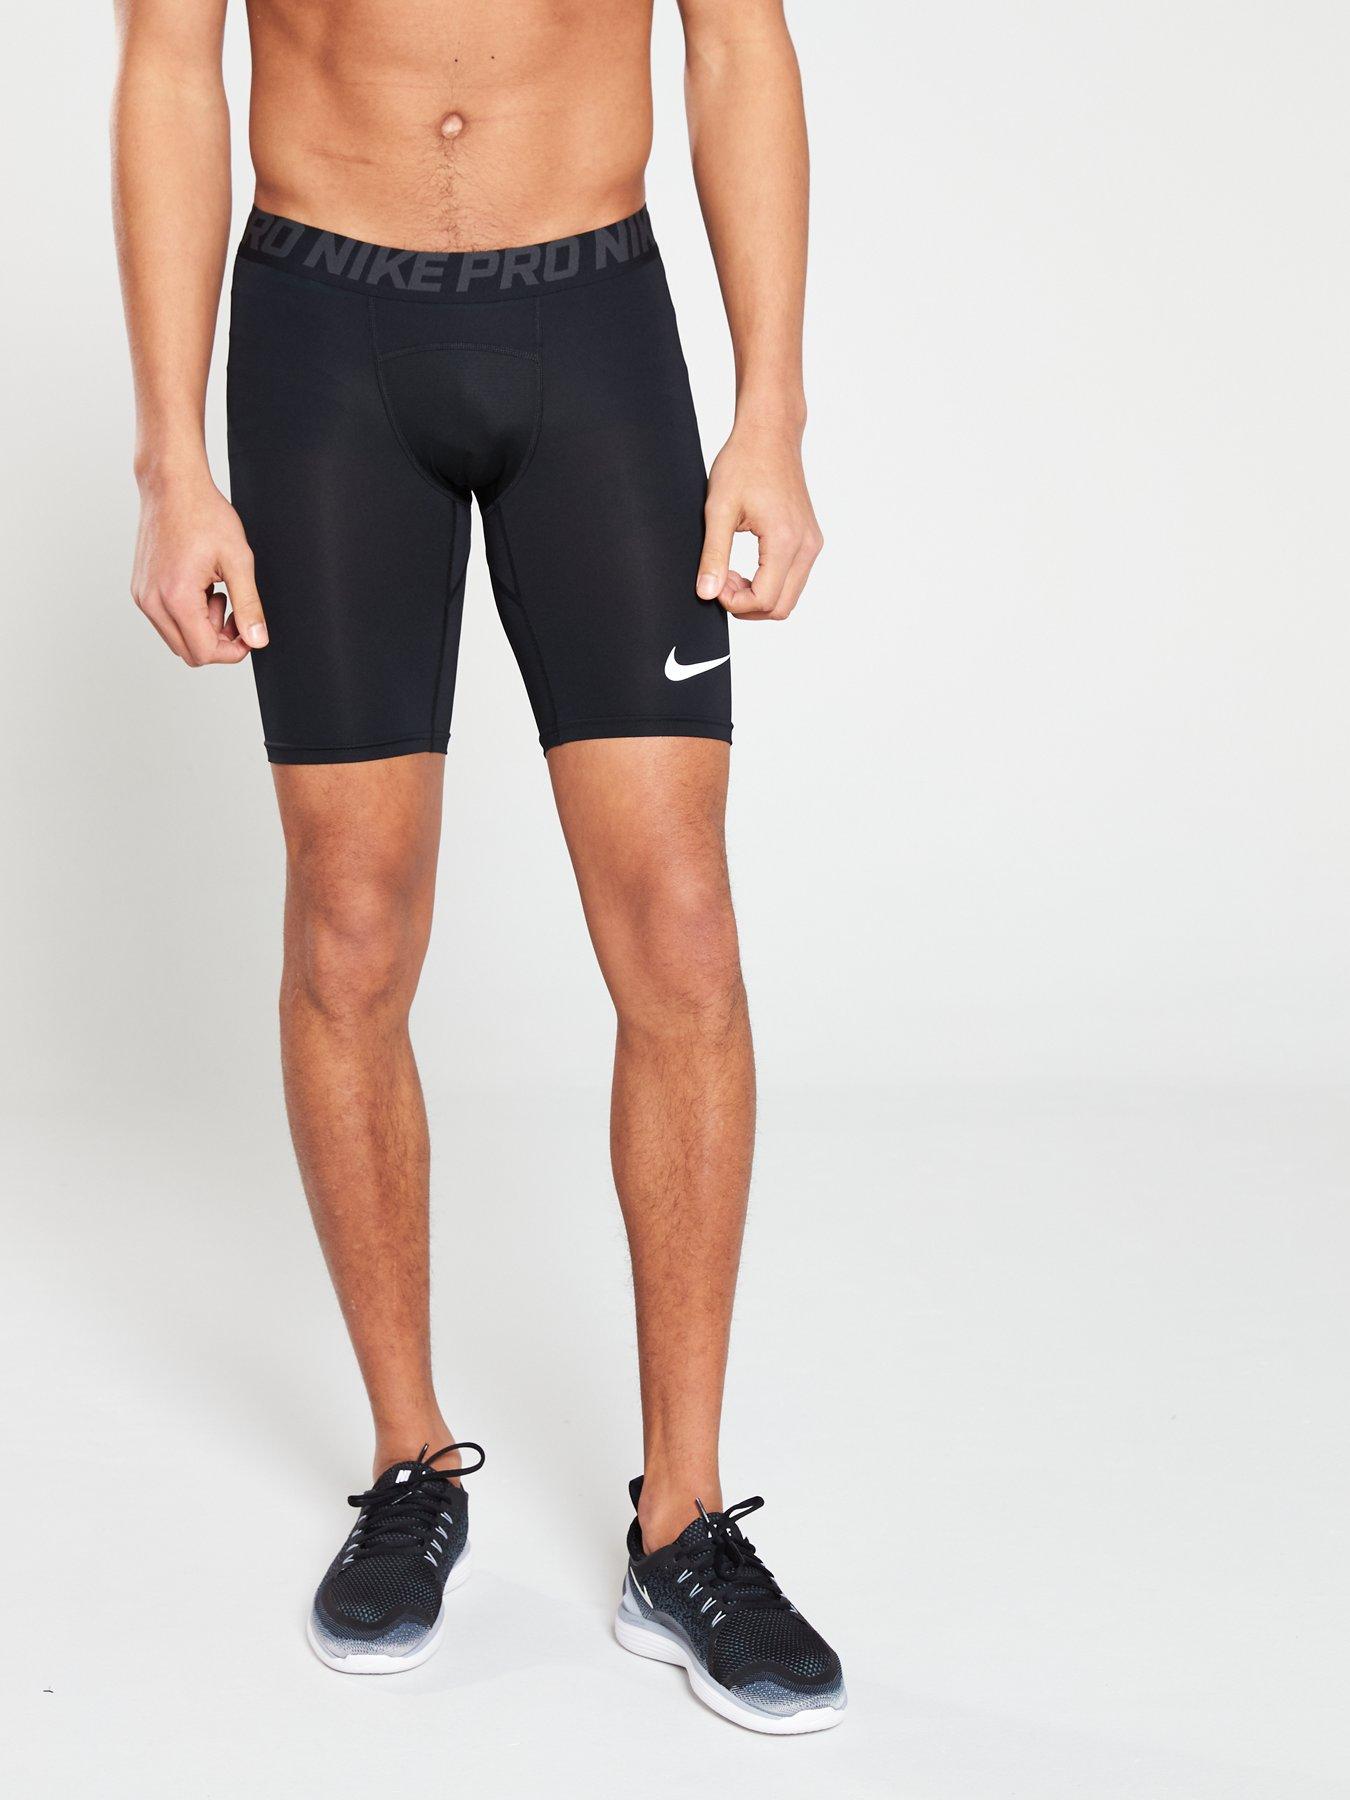 mens cycling shorts nike